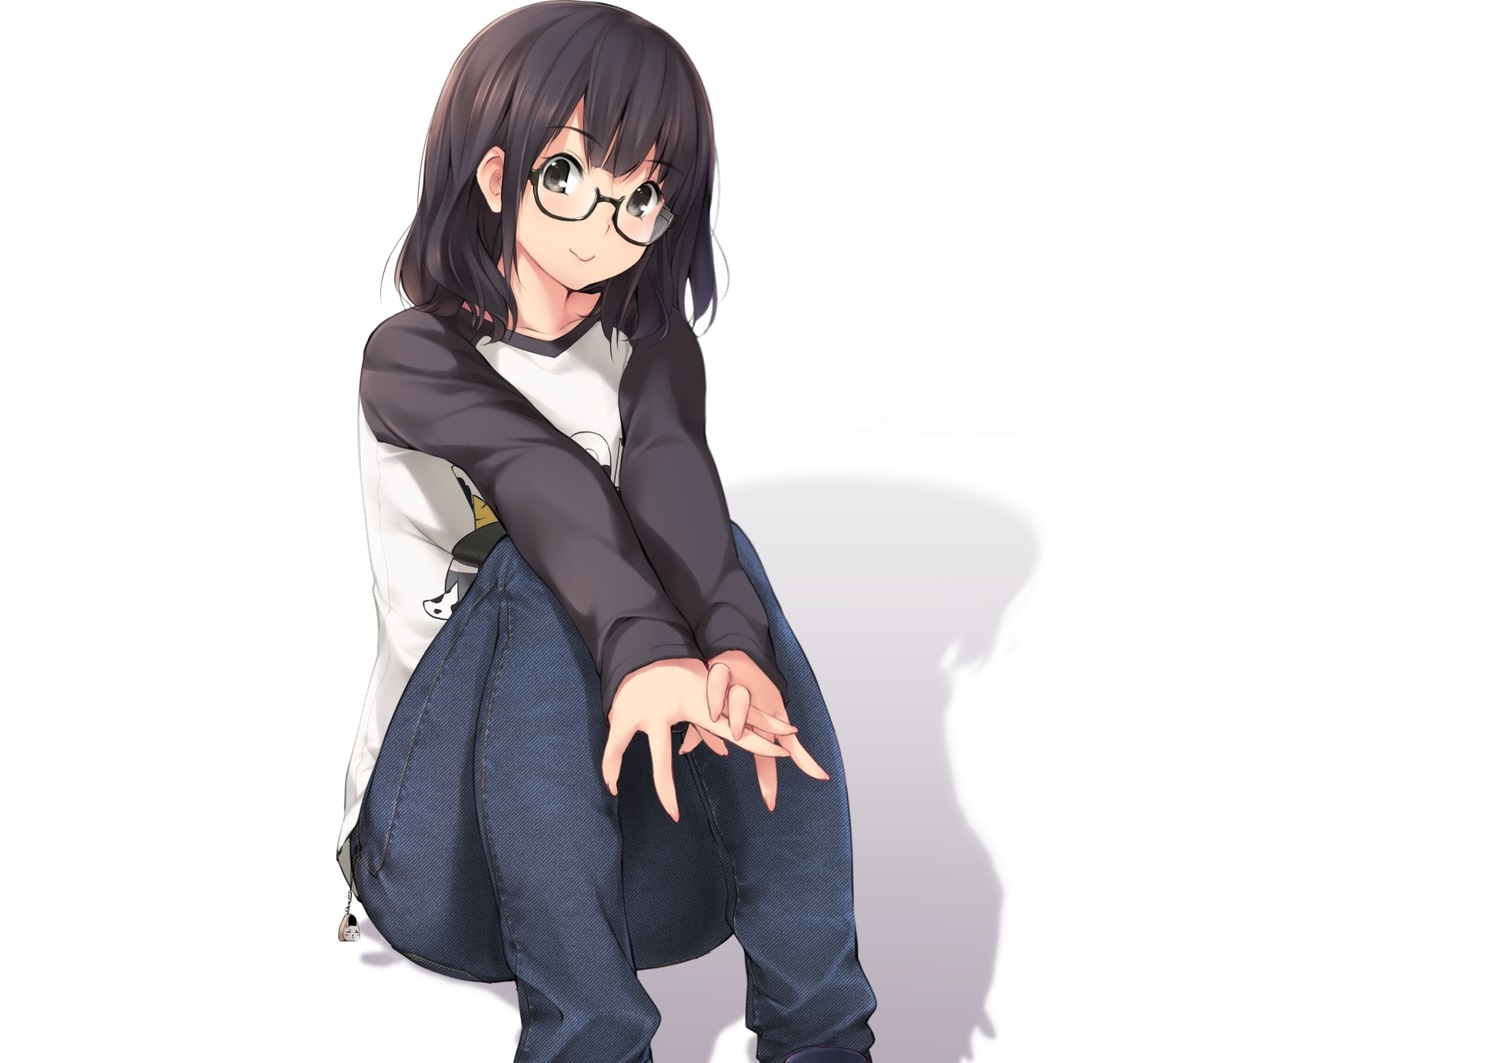 Anime girl đeo kính dễ thương luôn làm say đắm trái tim mọi người. Bạn còn chờ đợi gì nữa mà không xem những hình ảnh đầy quyến rũ về loại nhân vật phim anime này.